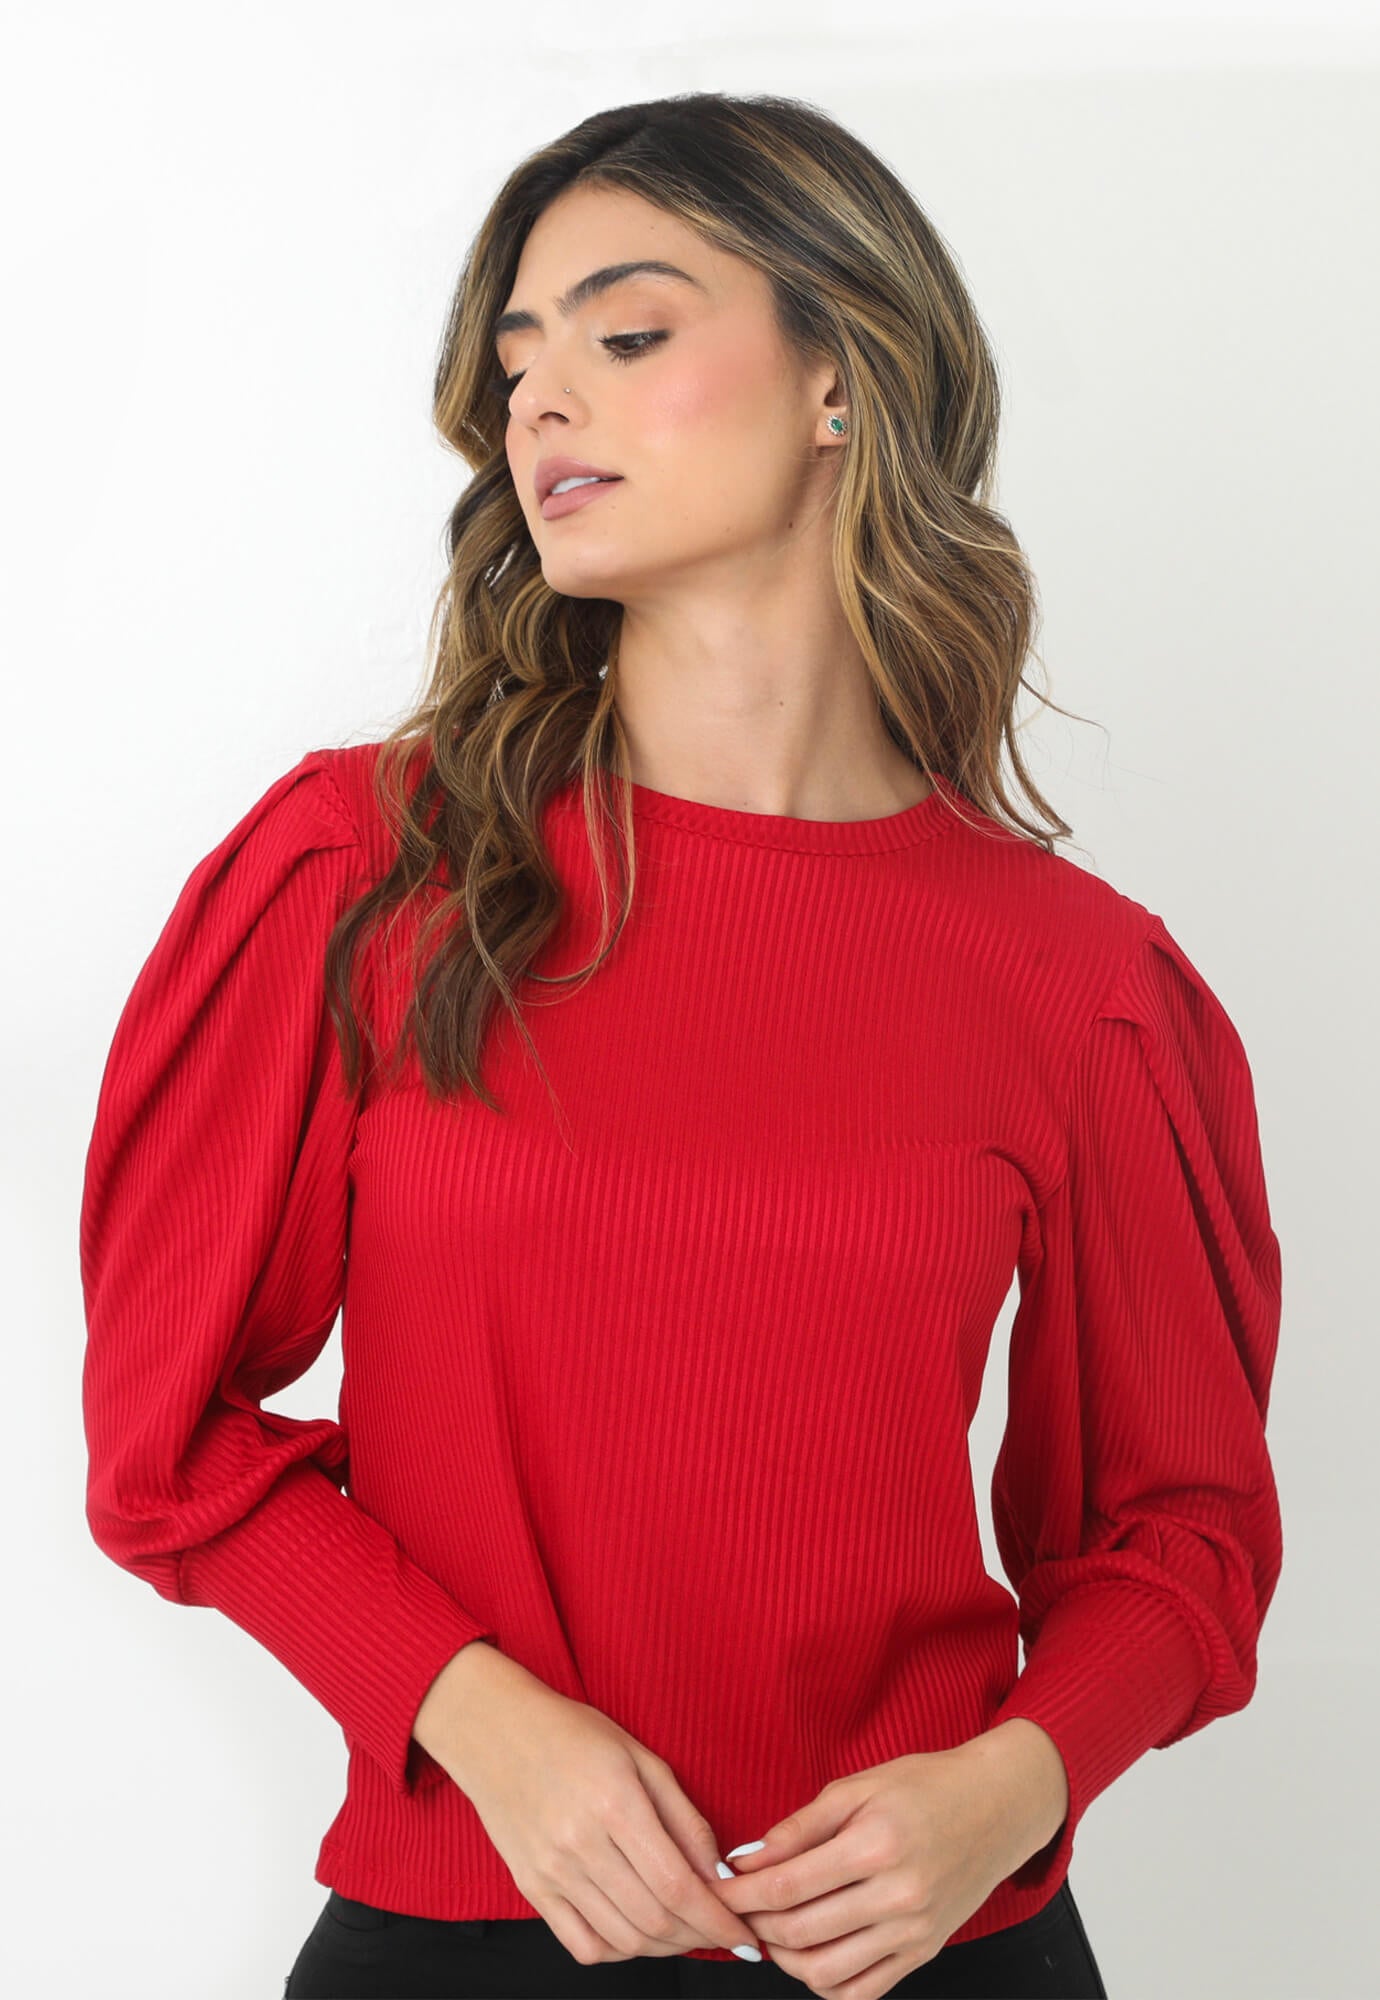 Camiseta roja con volumen en manga larga para mujer